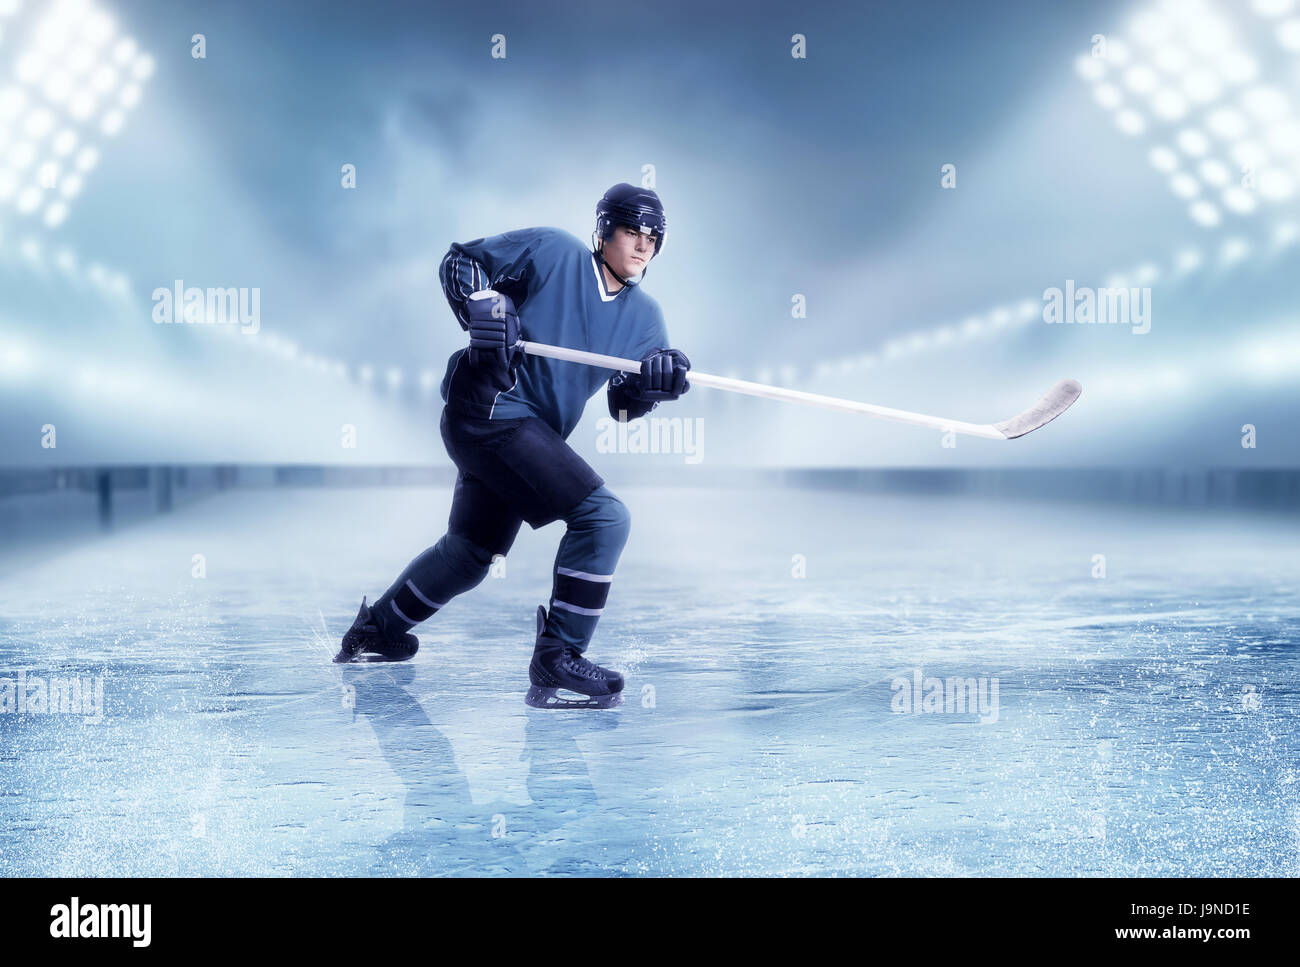 Professional ice hockey player shooting, stadium on background. Ice-skating Stock Photo